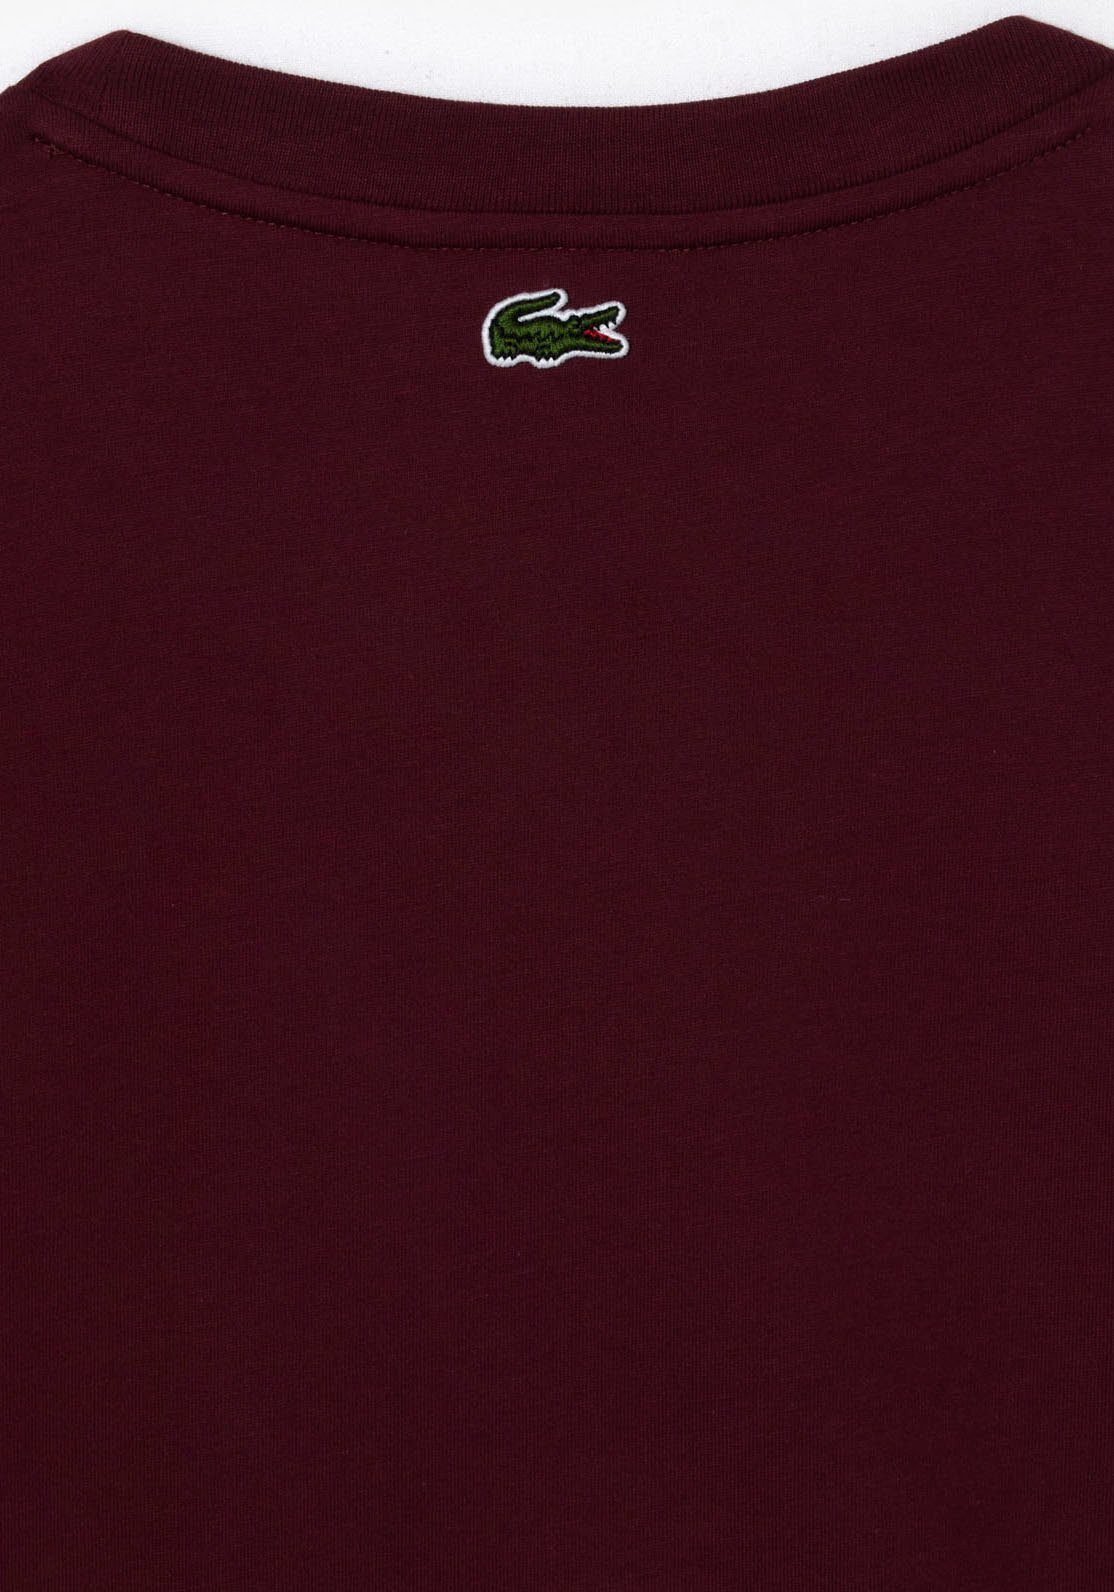 Lacoste T-Shirt mit Markenlabel Bordeaux